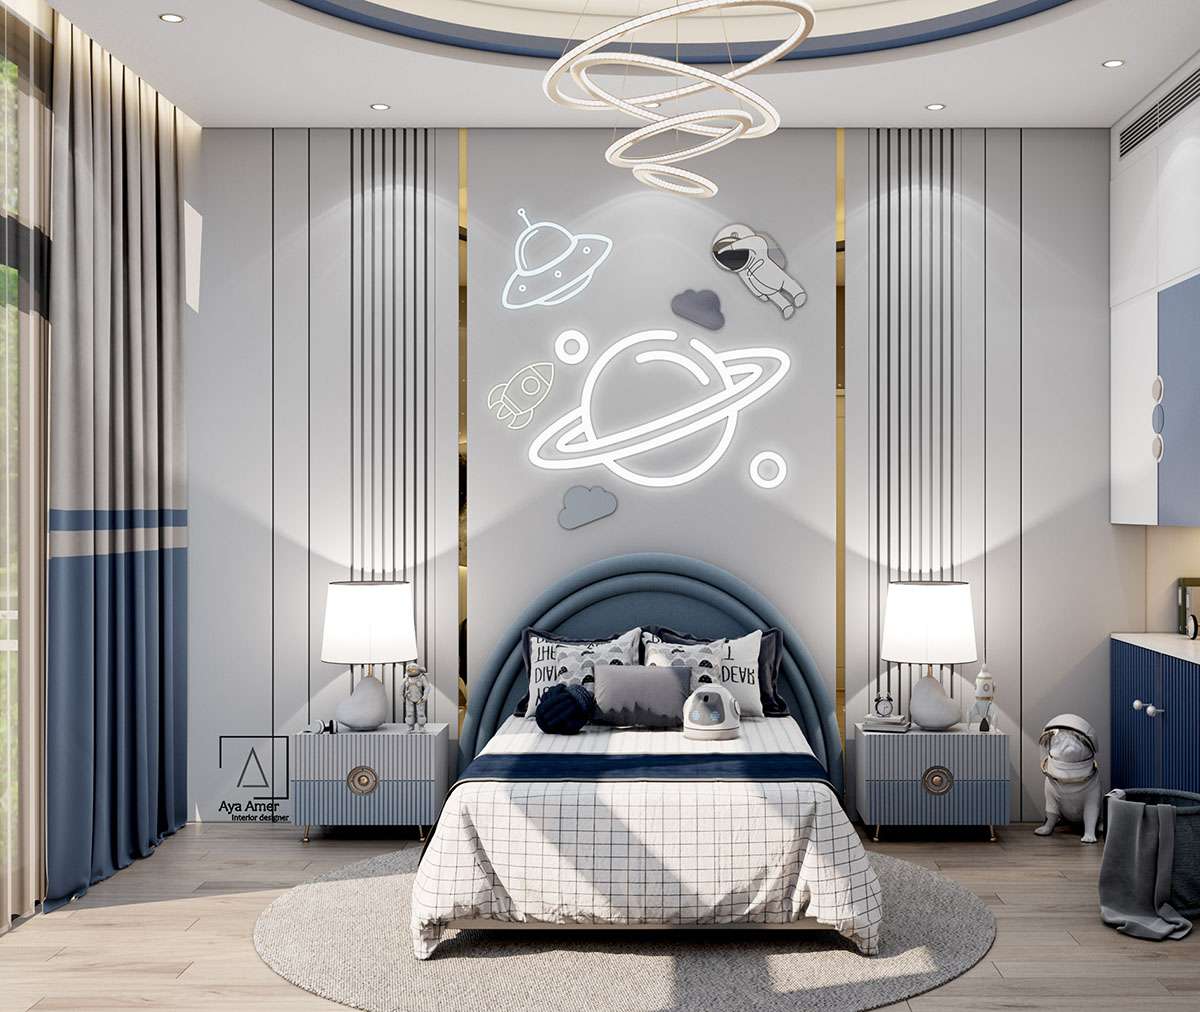 Phòng ngủ với theme vũ trụ cho các bé yêu khám phá thế giới